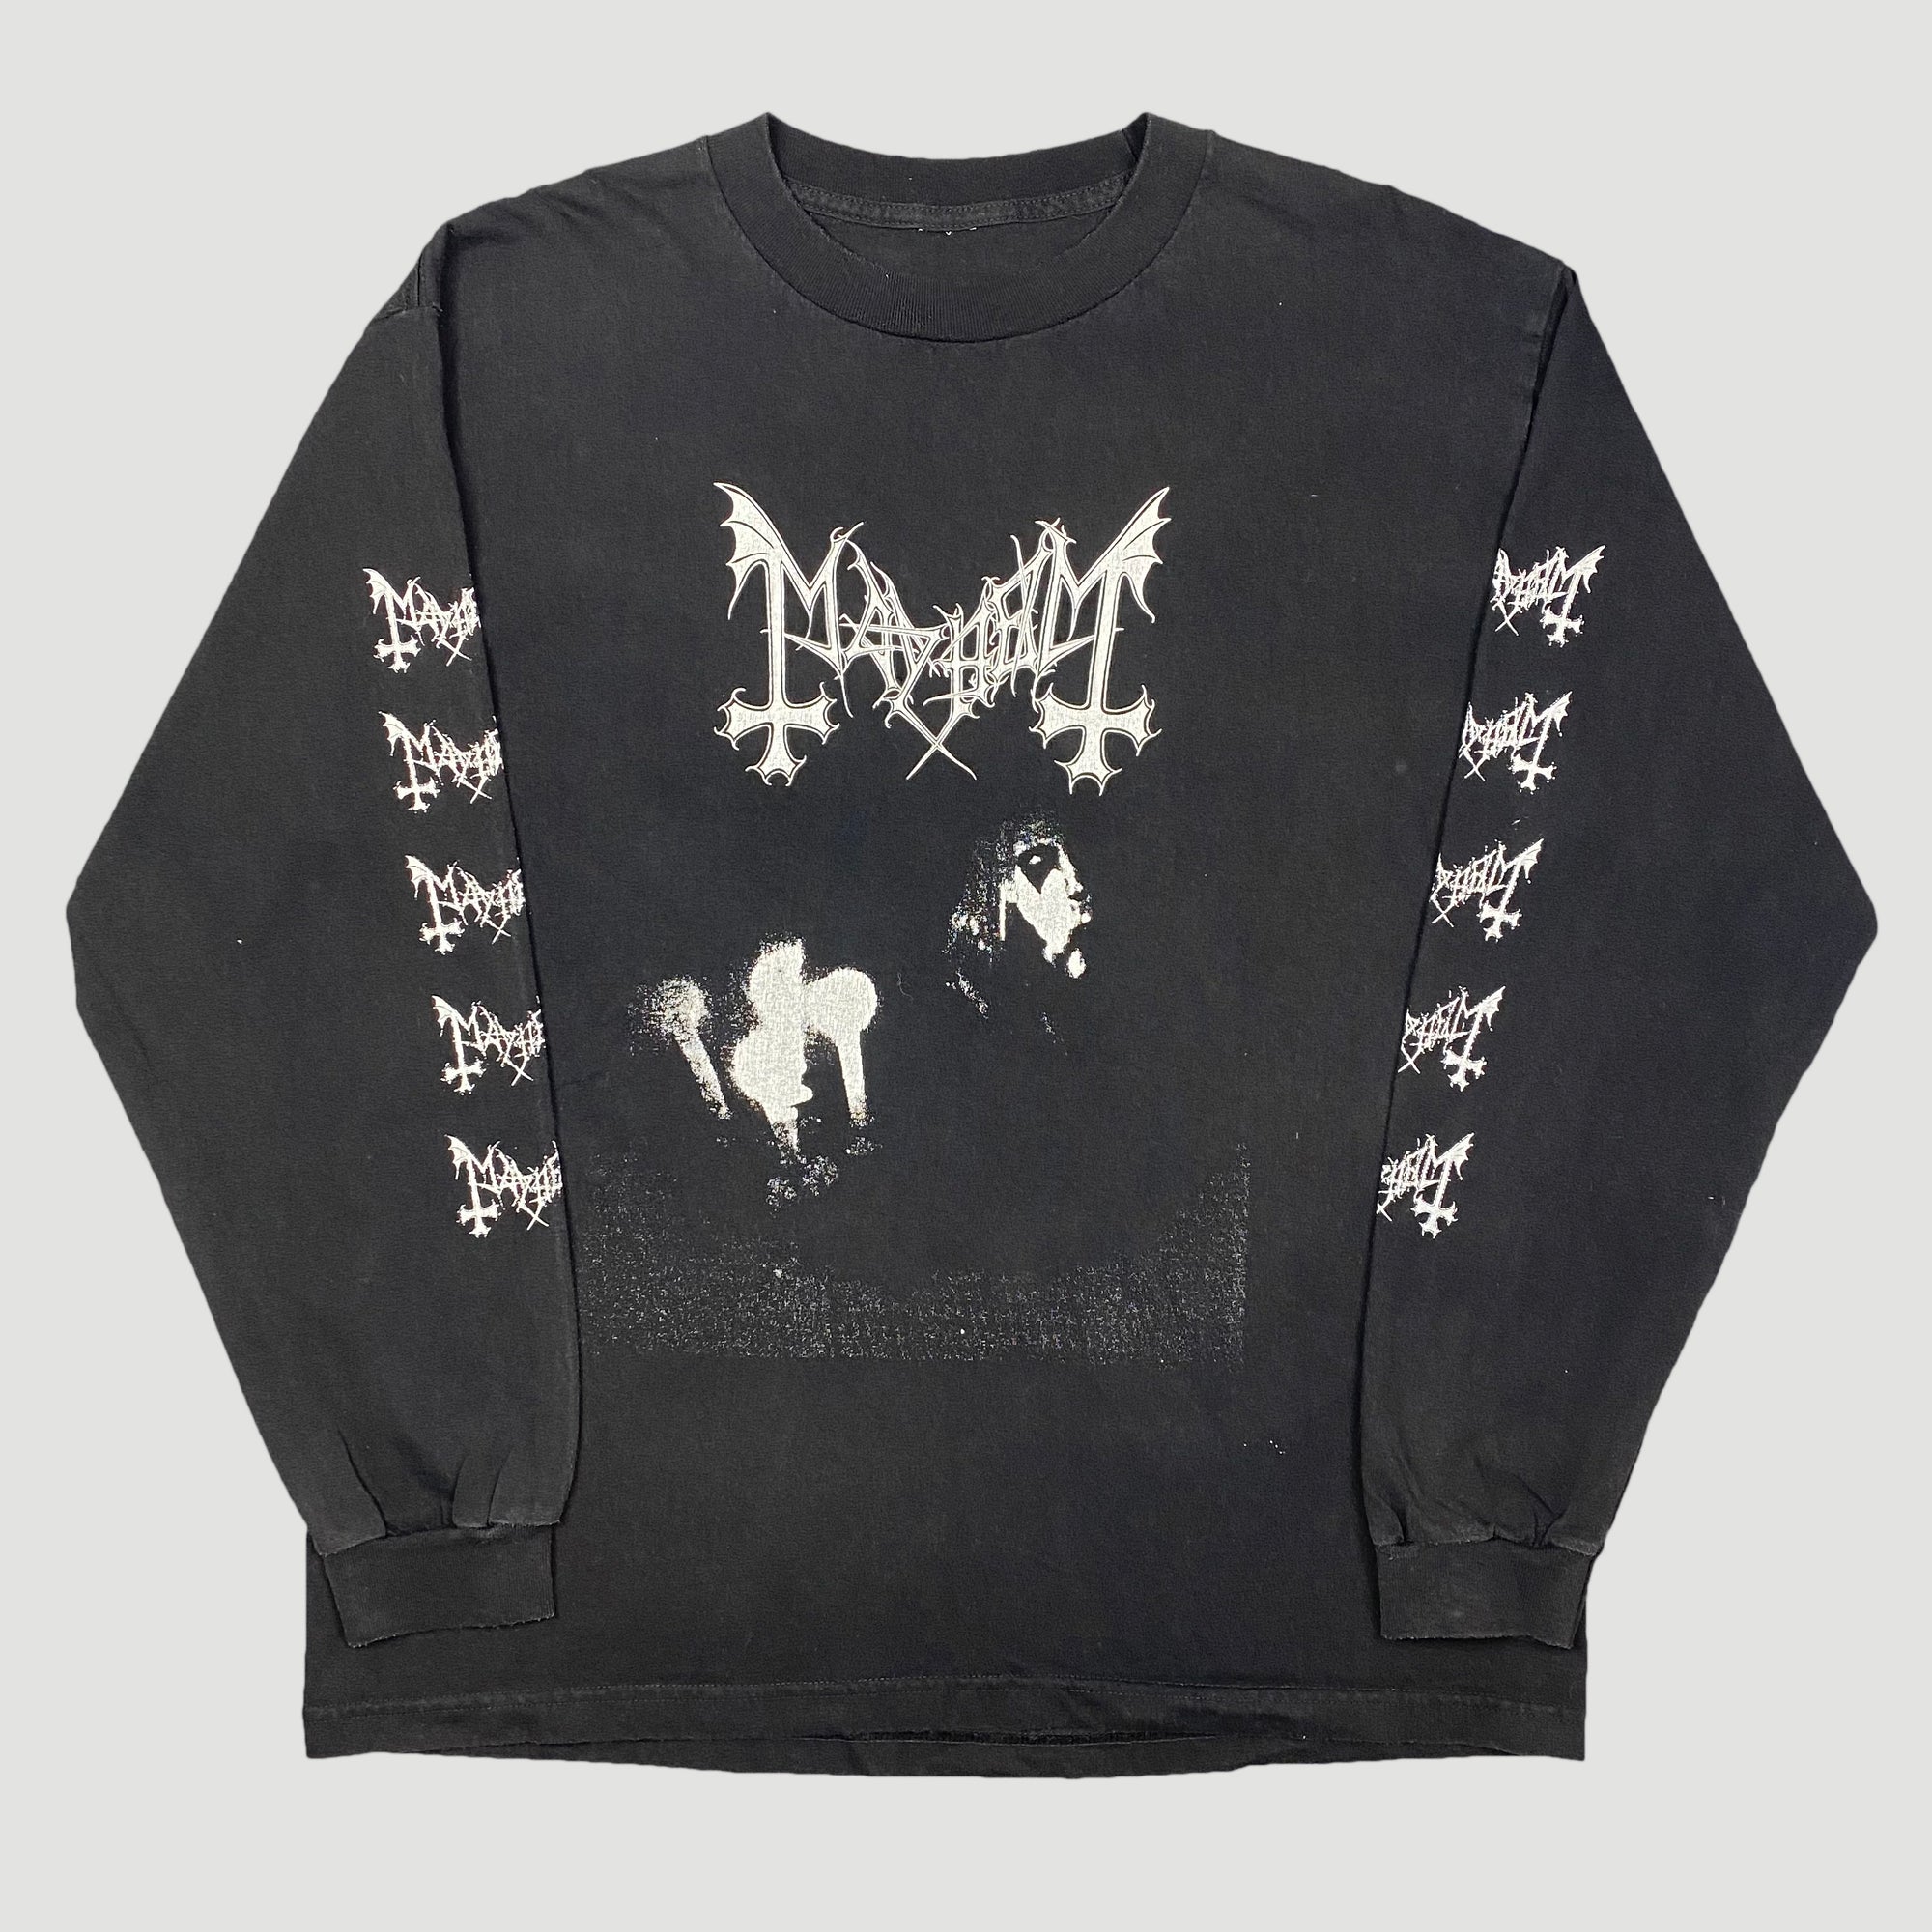 mayhem band - Mayhem Black Metal - Long Sleeve T-Shirt